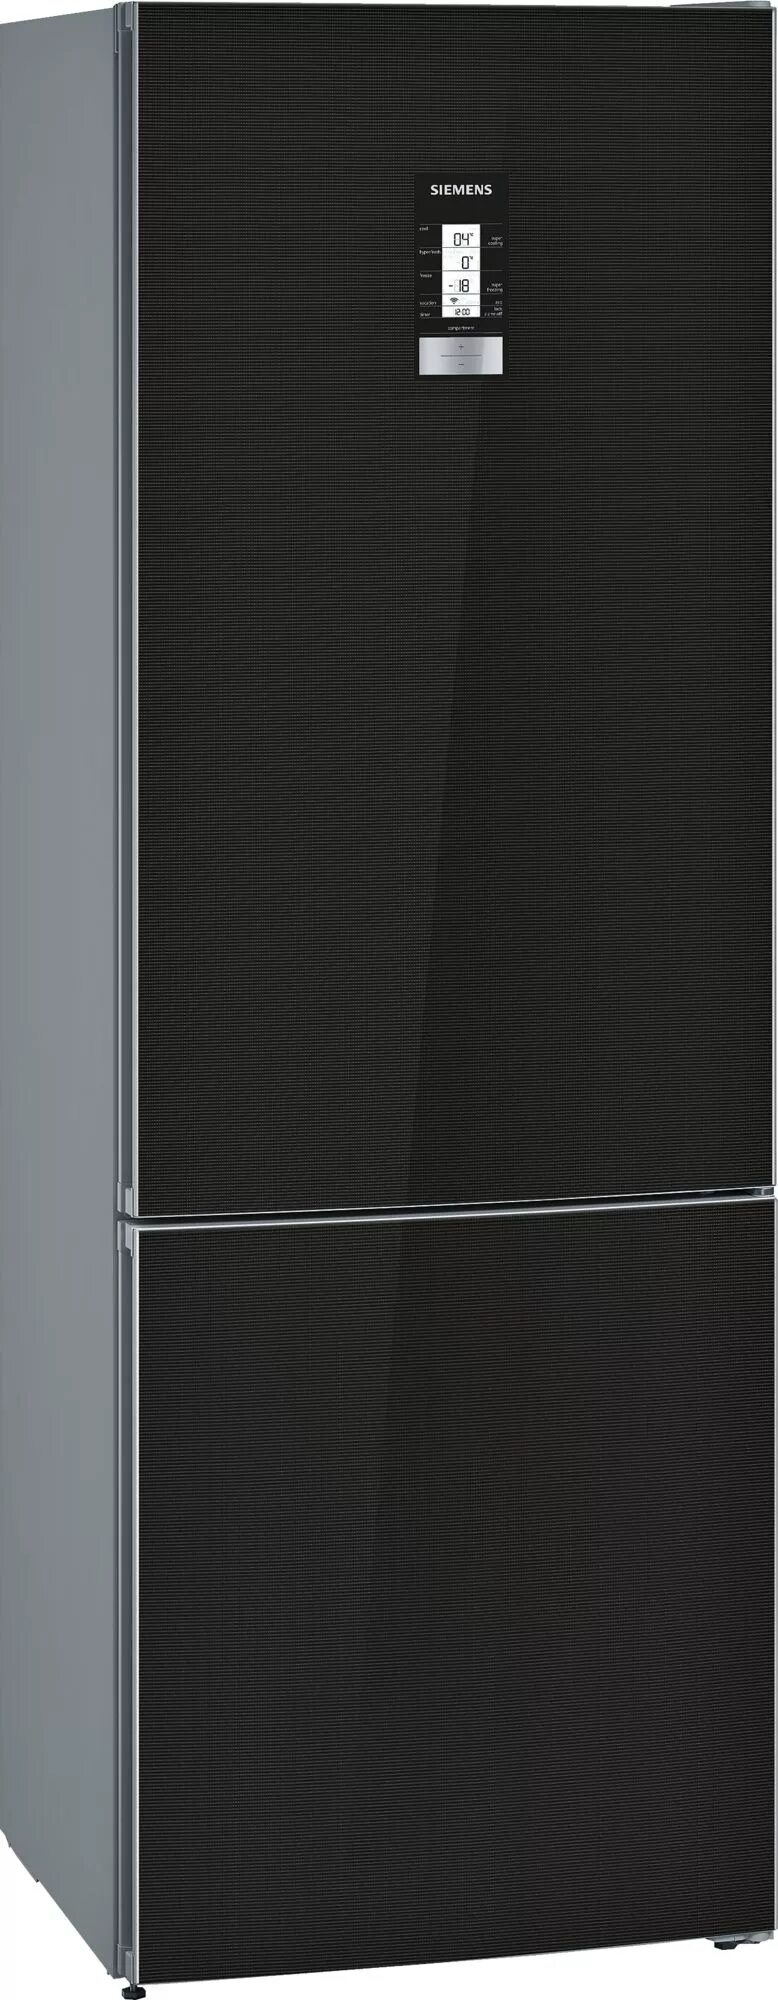 Холодильник Gorenje rk6191sybk. Холодильник Gorenje nrk6201sybk. Холодильник Siemens 70см стекло. Холодильник Siemens kg49nai2or. Купить холодильник сименс